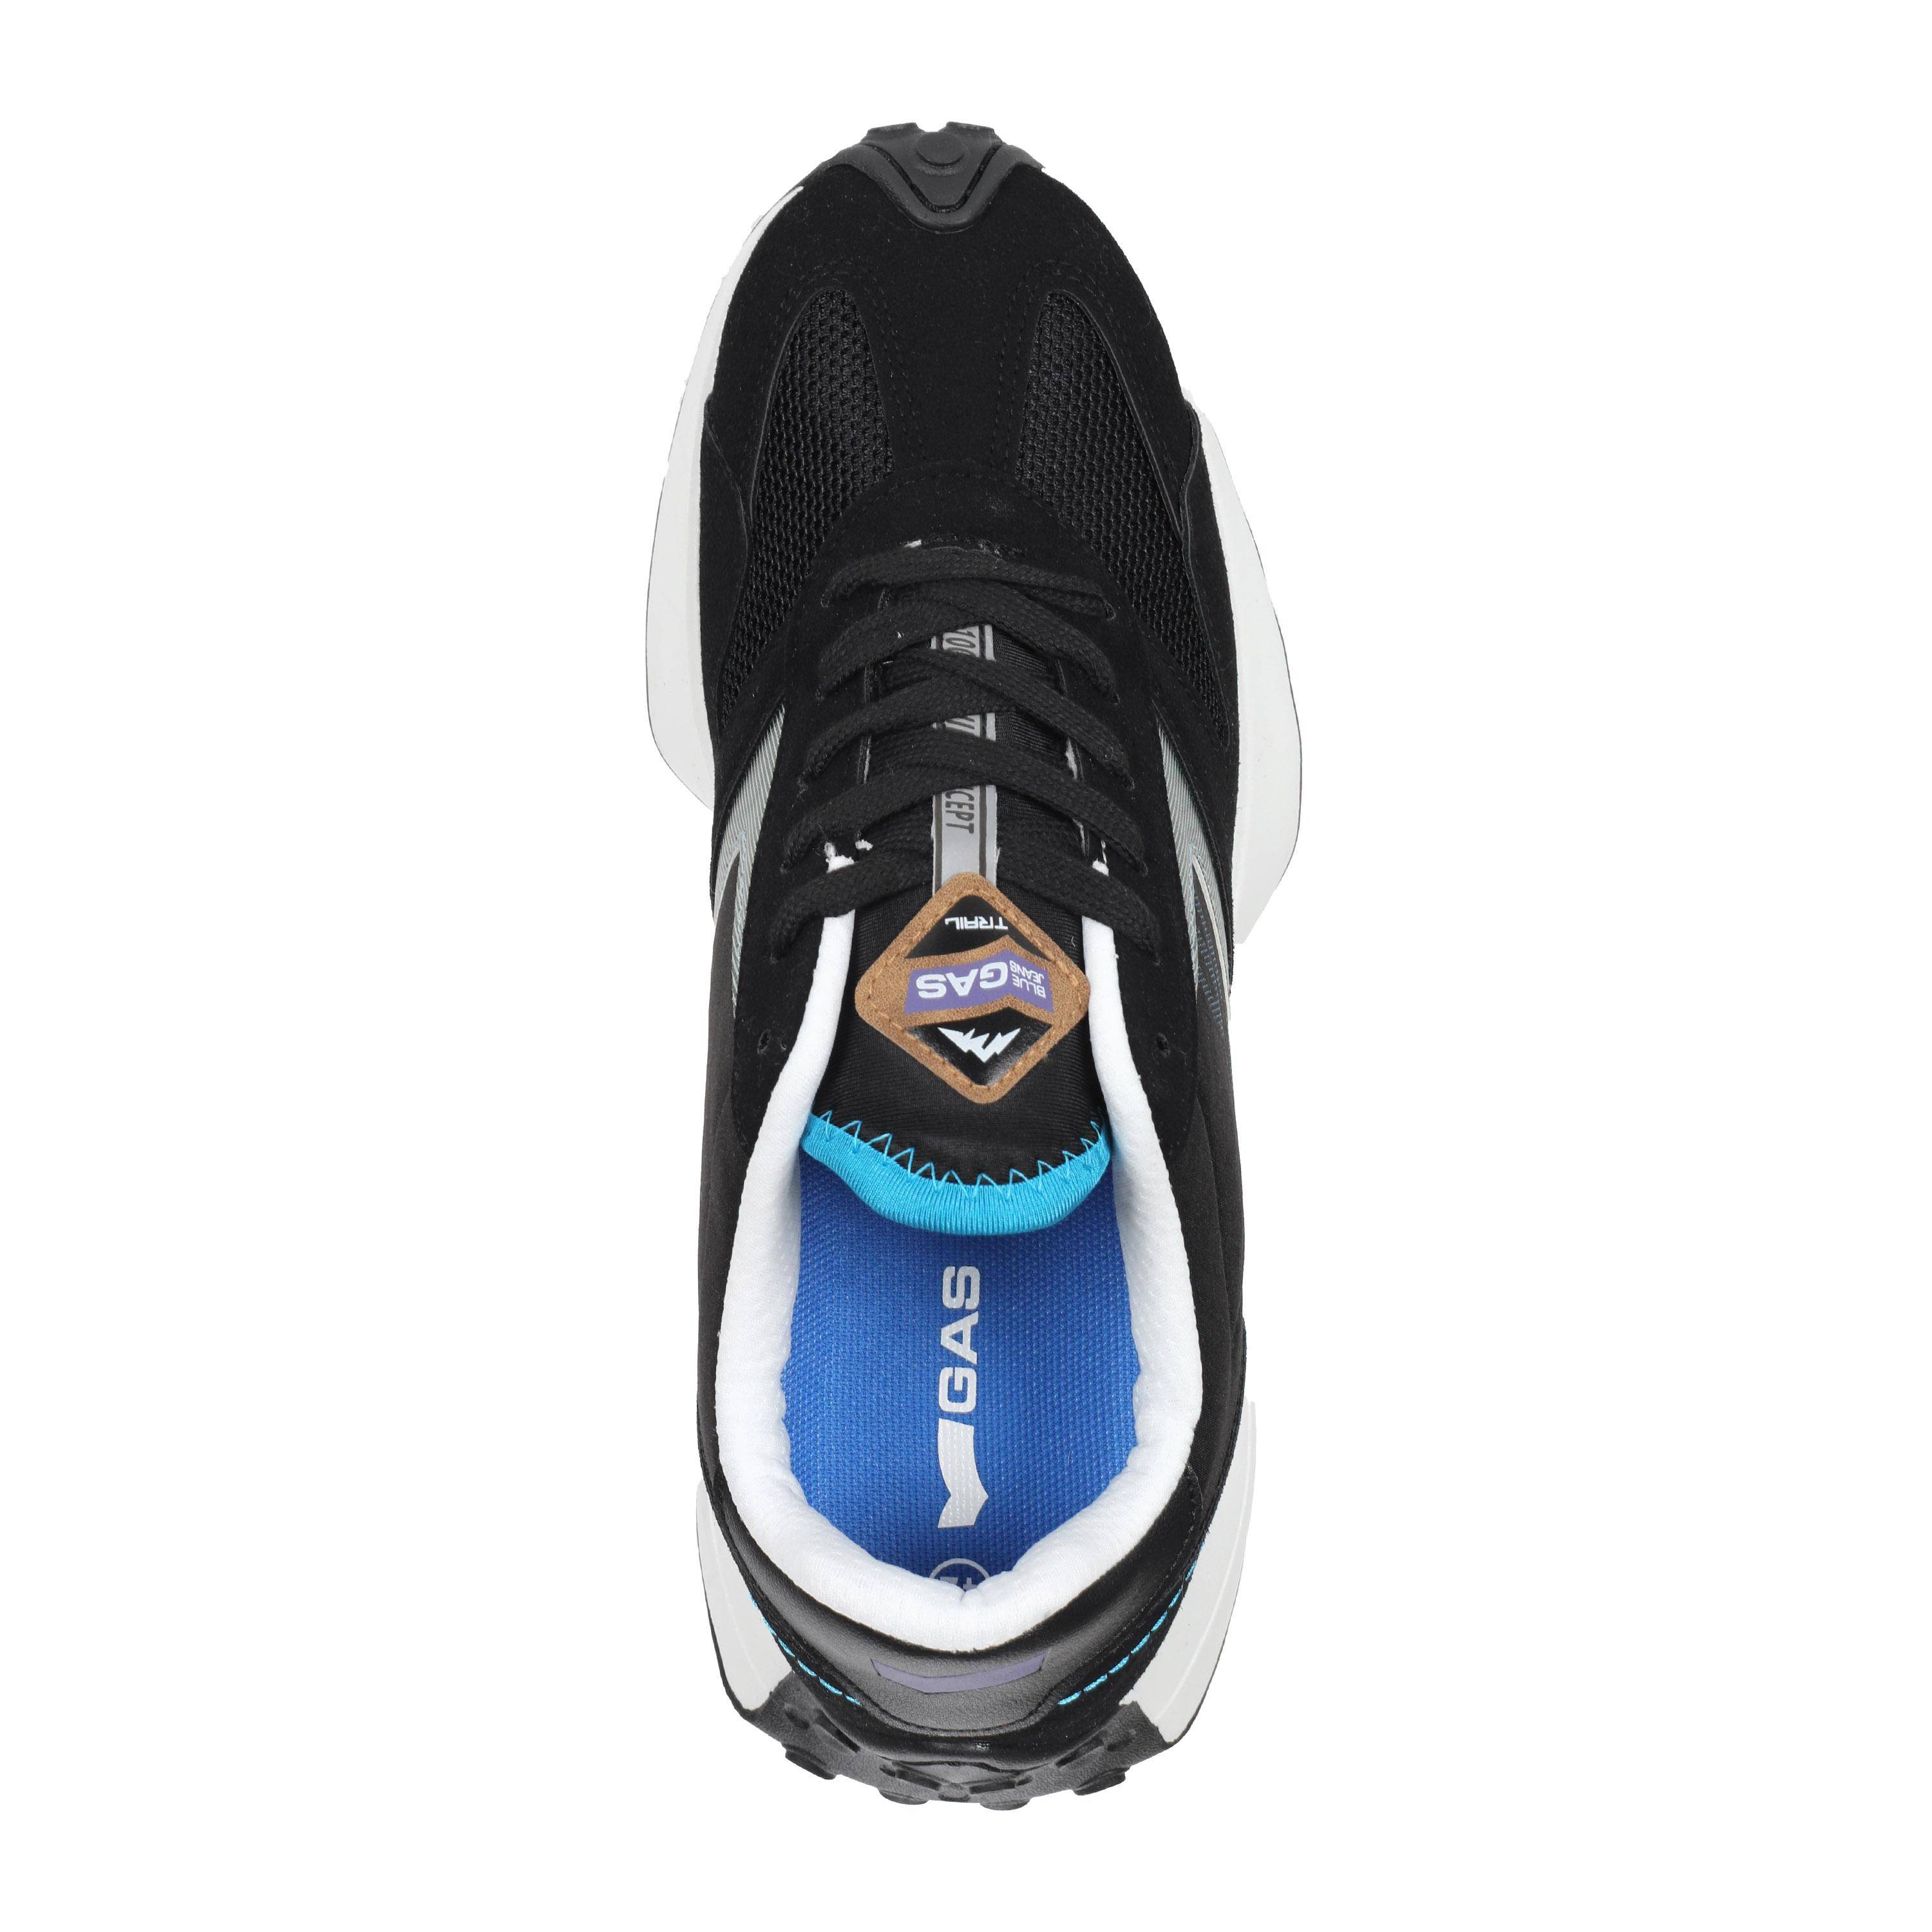 Мужские кроссовки GAS, черные, цвет черный, размер 41 - фото 4